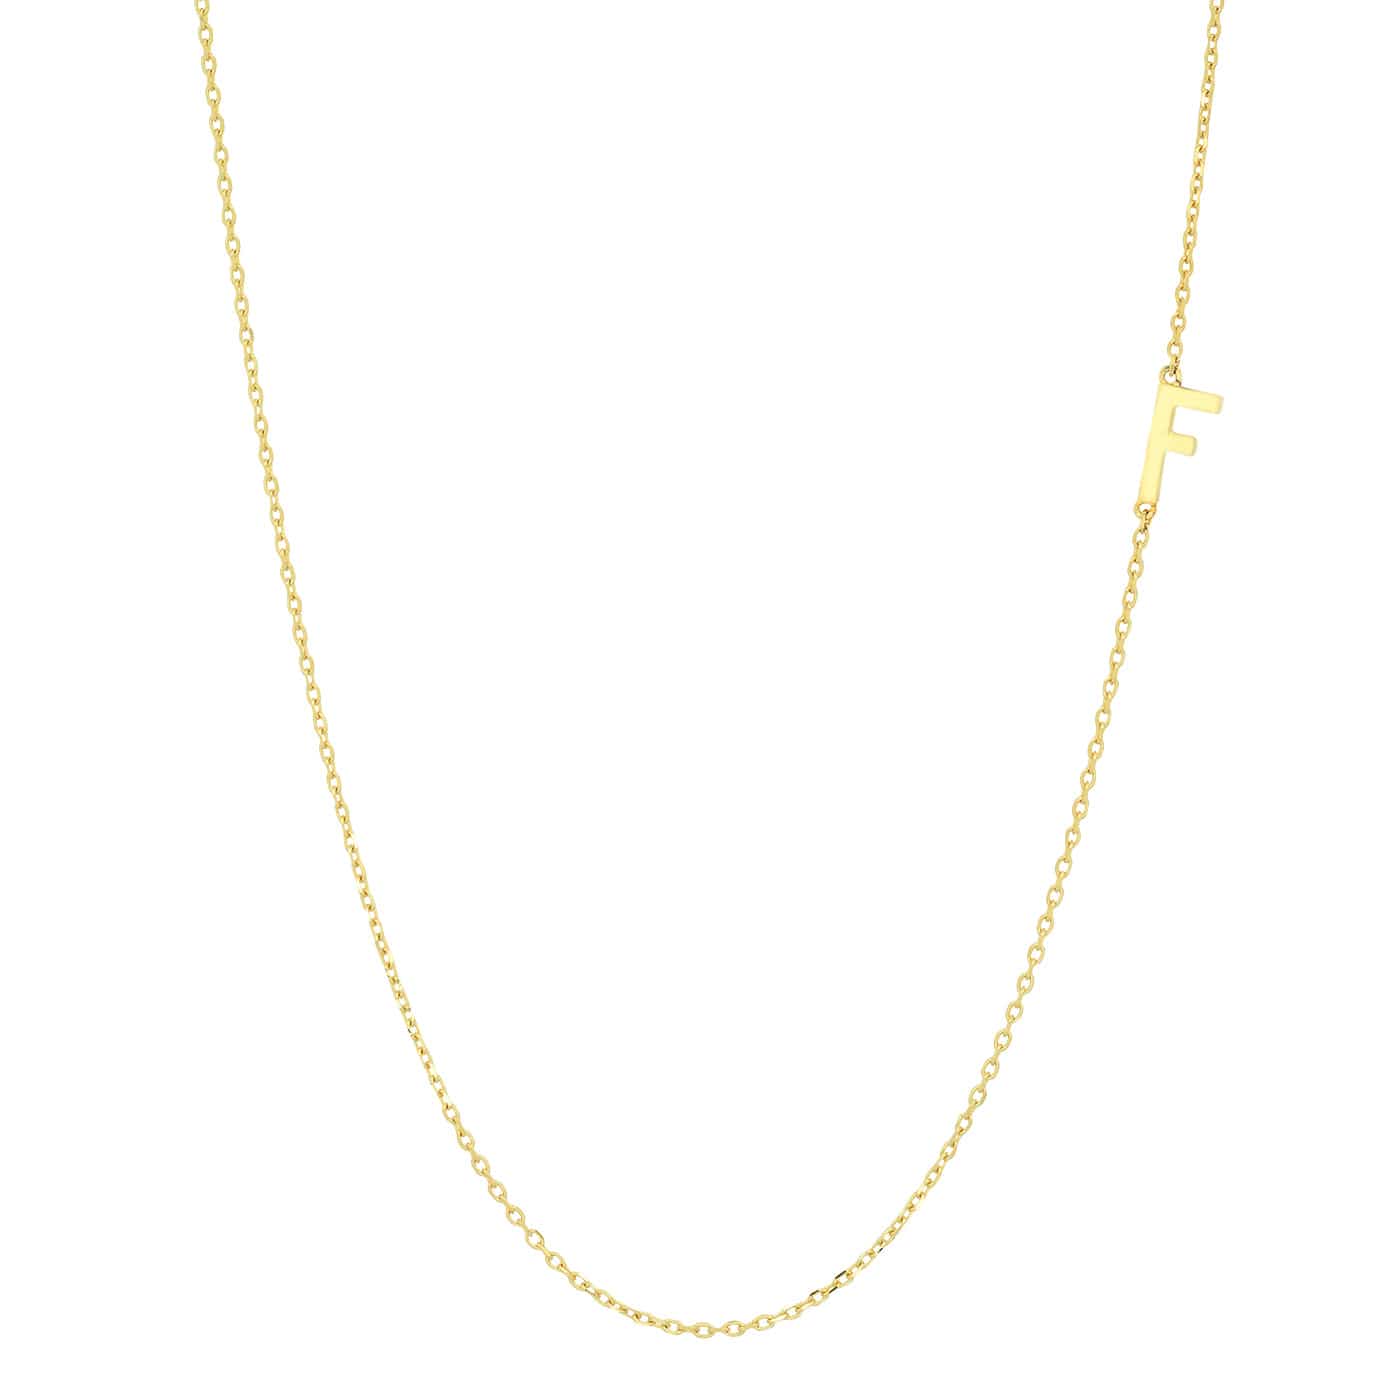 TAI JEWELRY Necklace F 14k Sideways Monogram Necklace